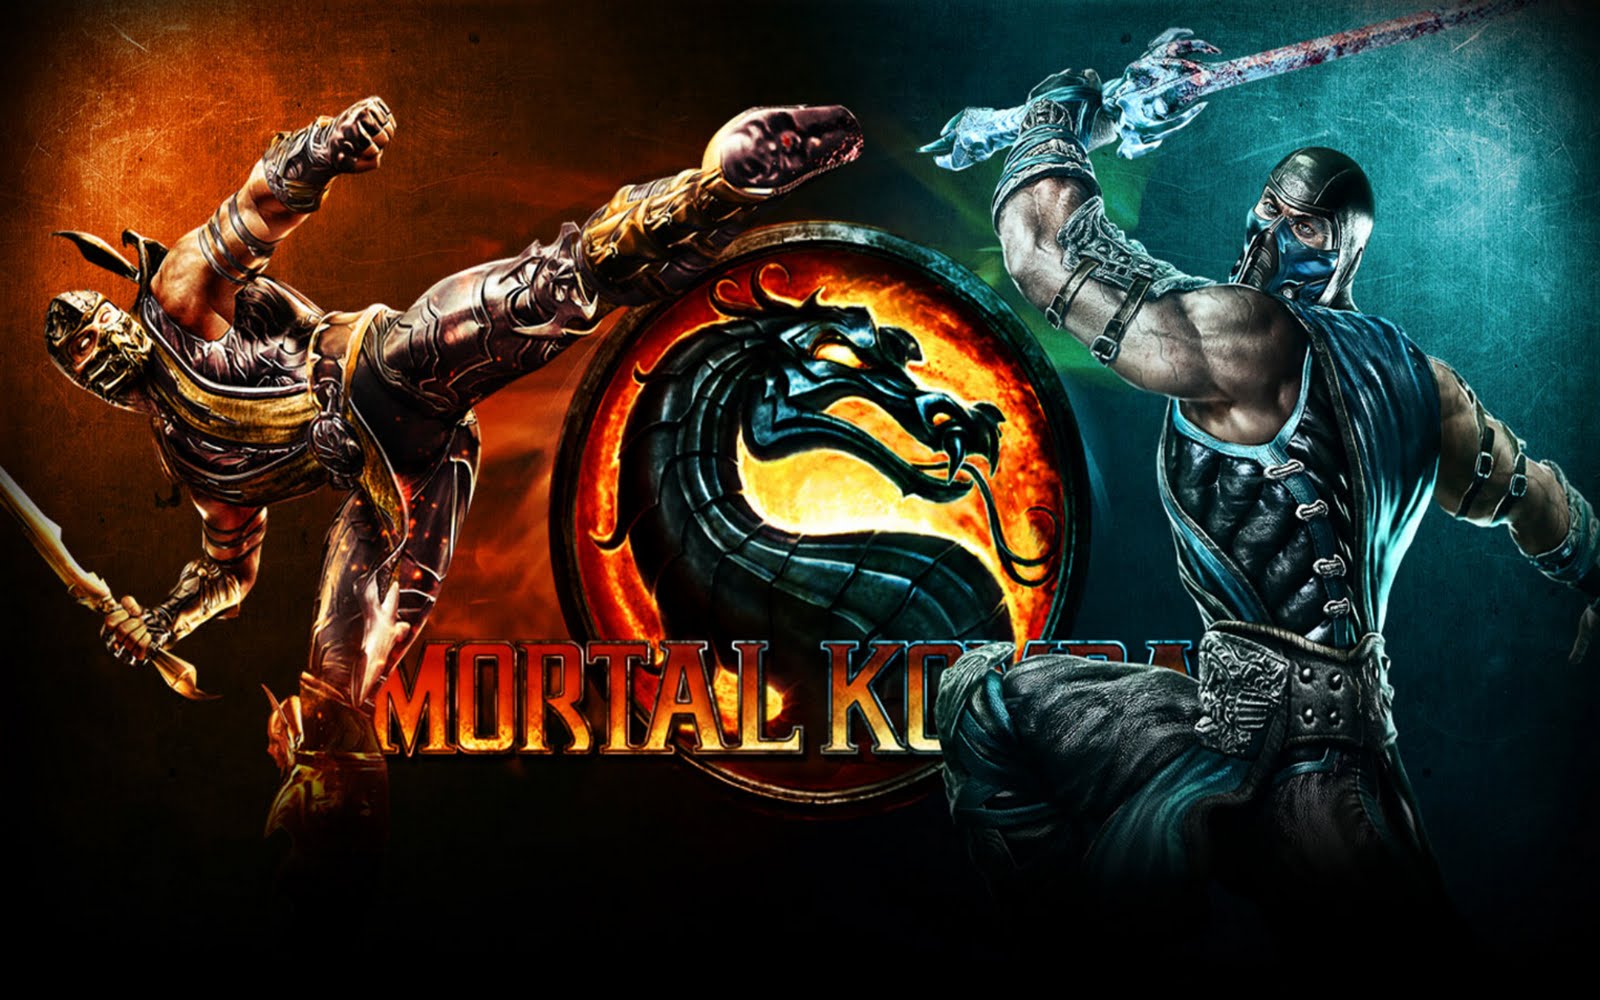 Mortal Kombat HD Wallpaper | 1920x1080 | ID:25037